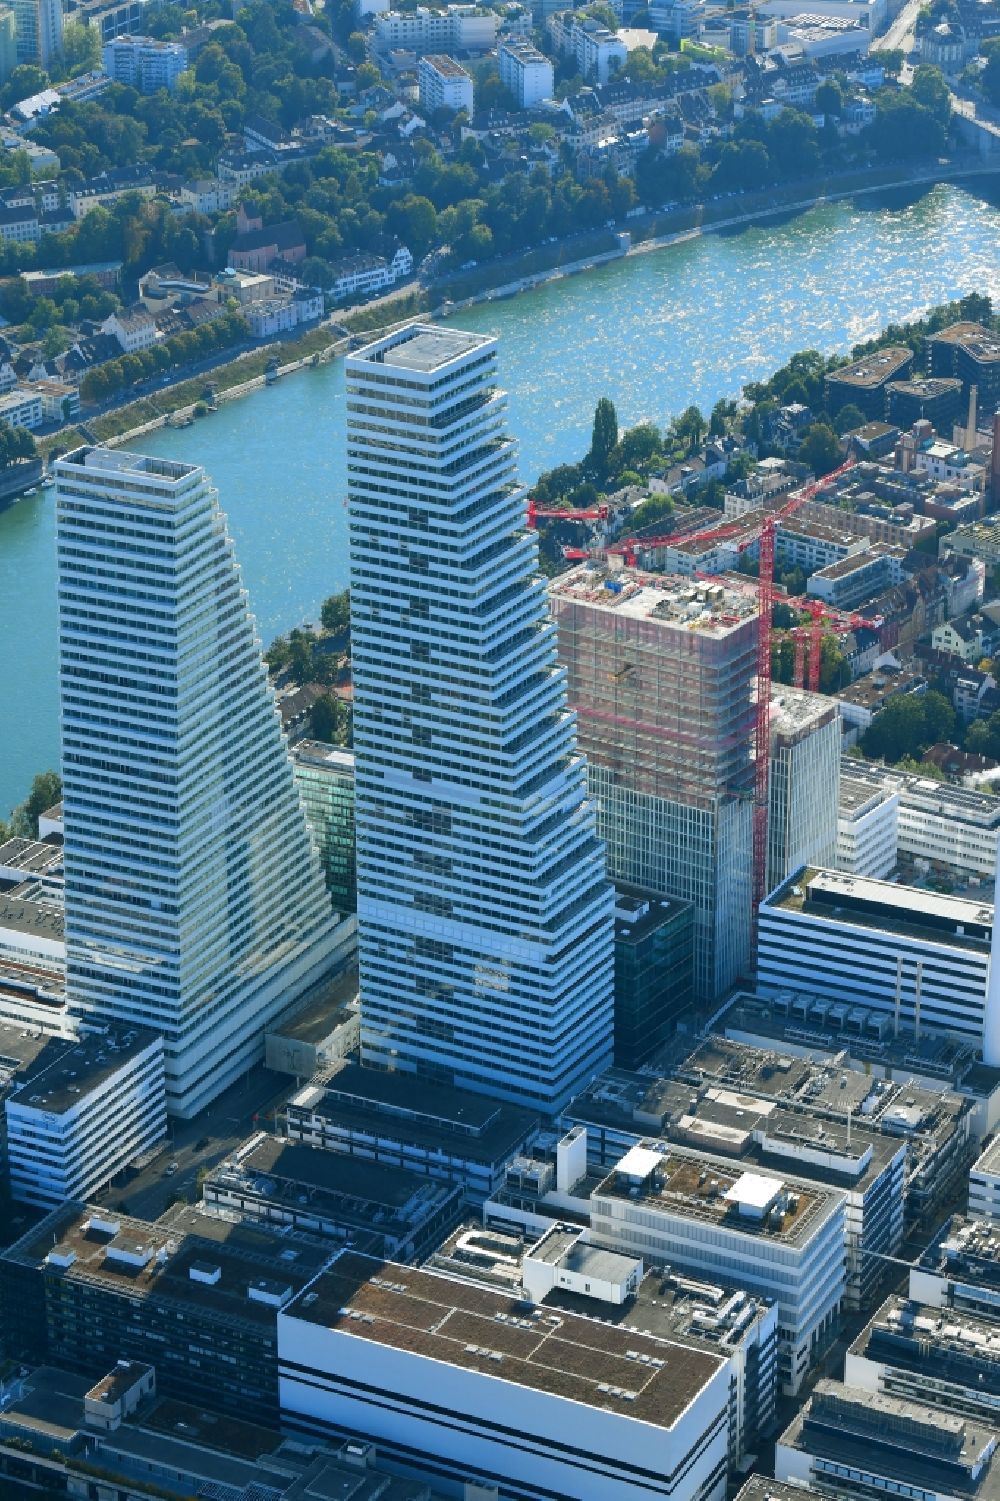 Luftaufnahme Basel - Erweiterungs- Baustellen am Areal und Betriebsgelände der Pharmafirma Roche in Basel in der Schweiz